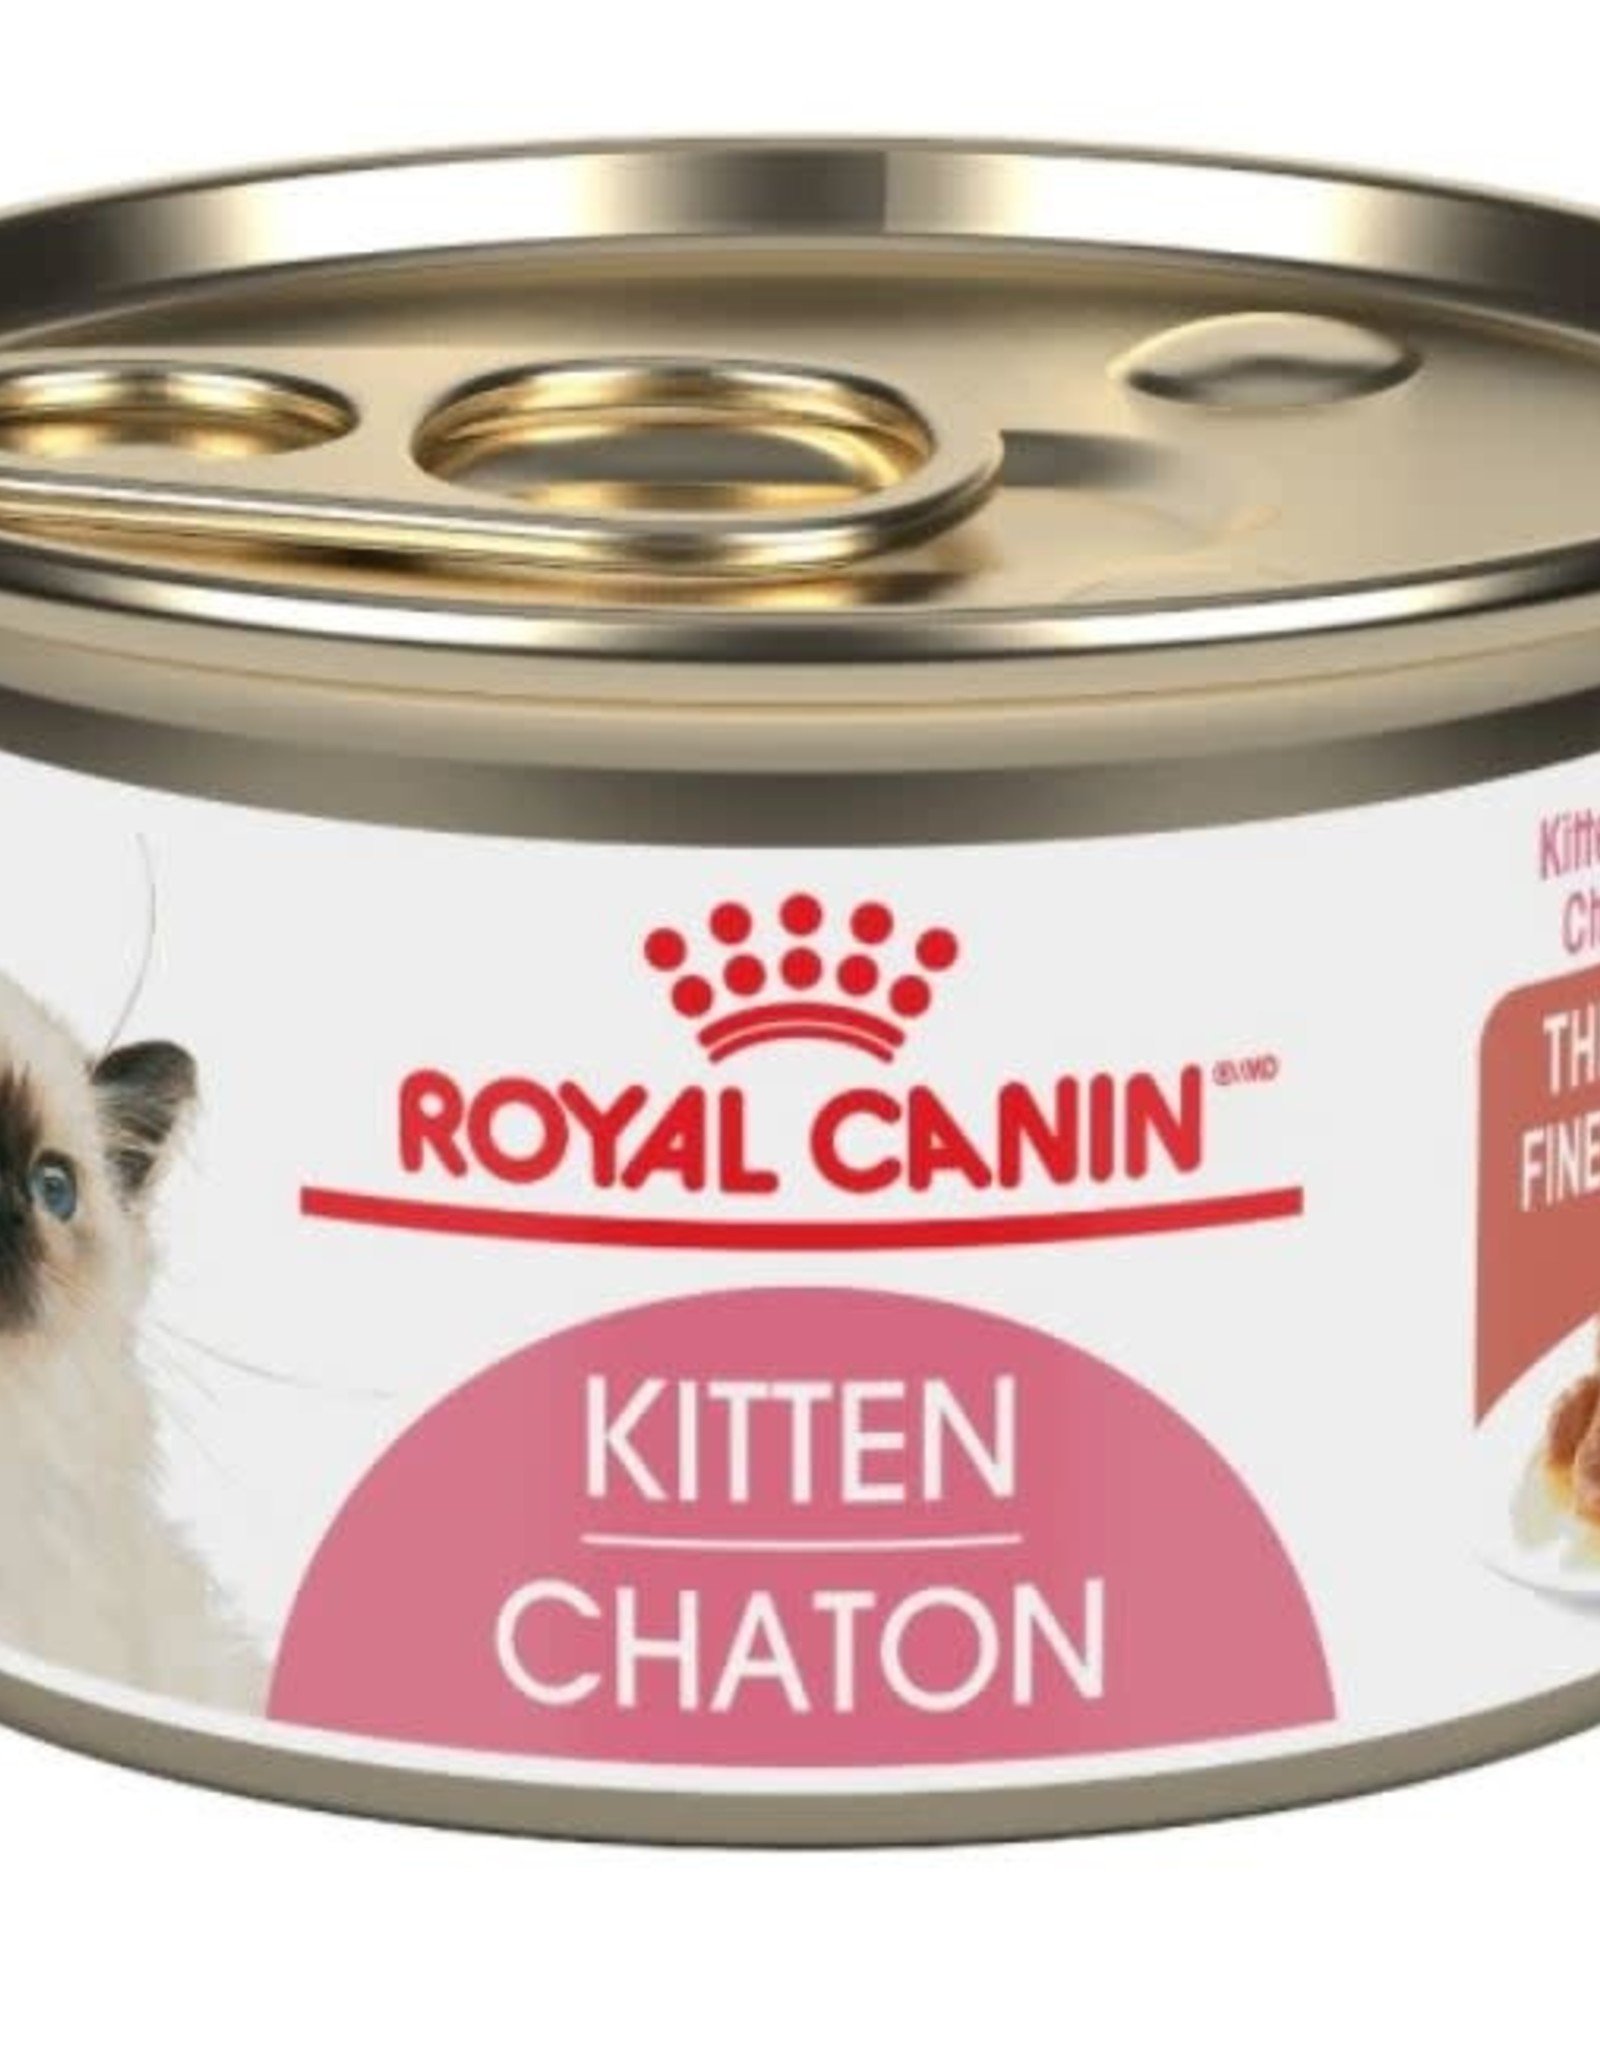 Royal Canin royal canin kitten 3oz cans*